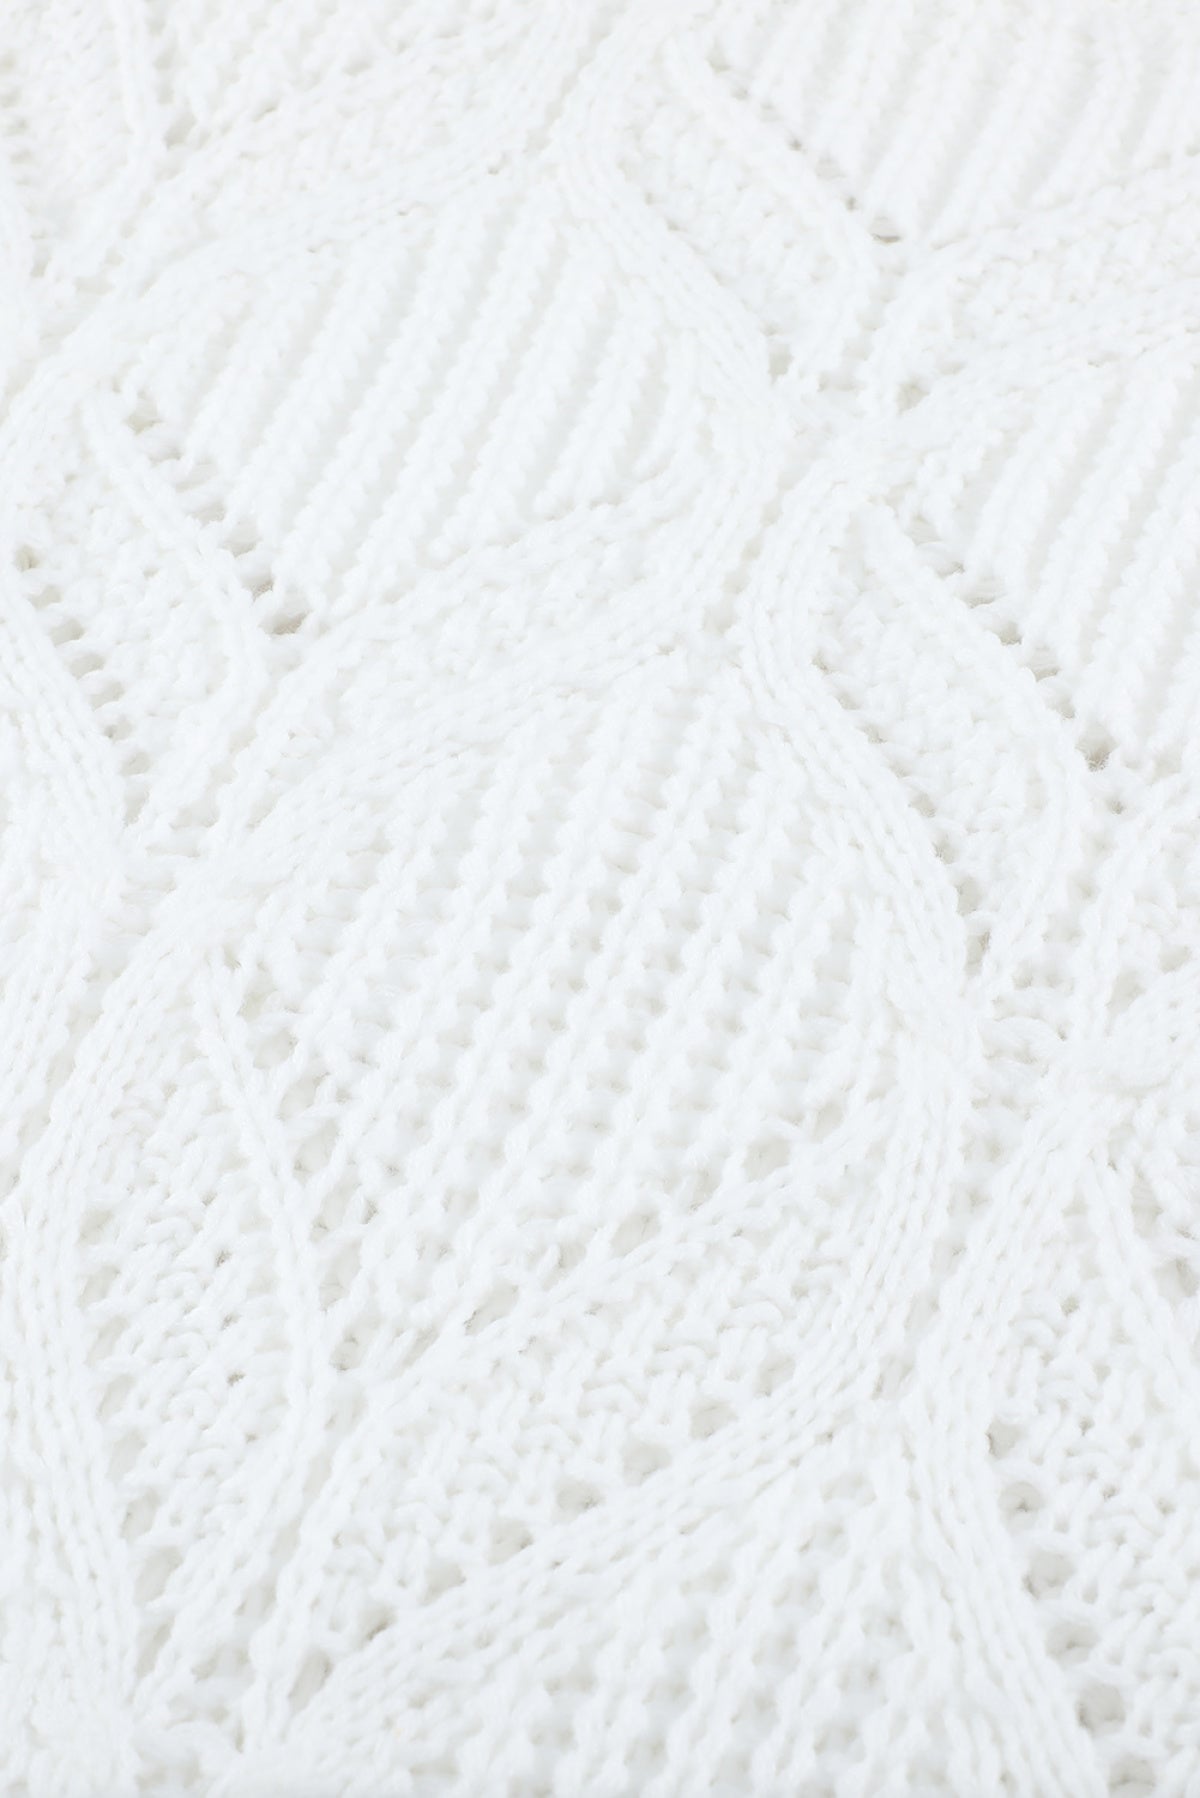 Crewneck Balloon Sleeve Textured Knit Sweater